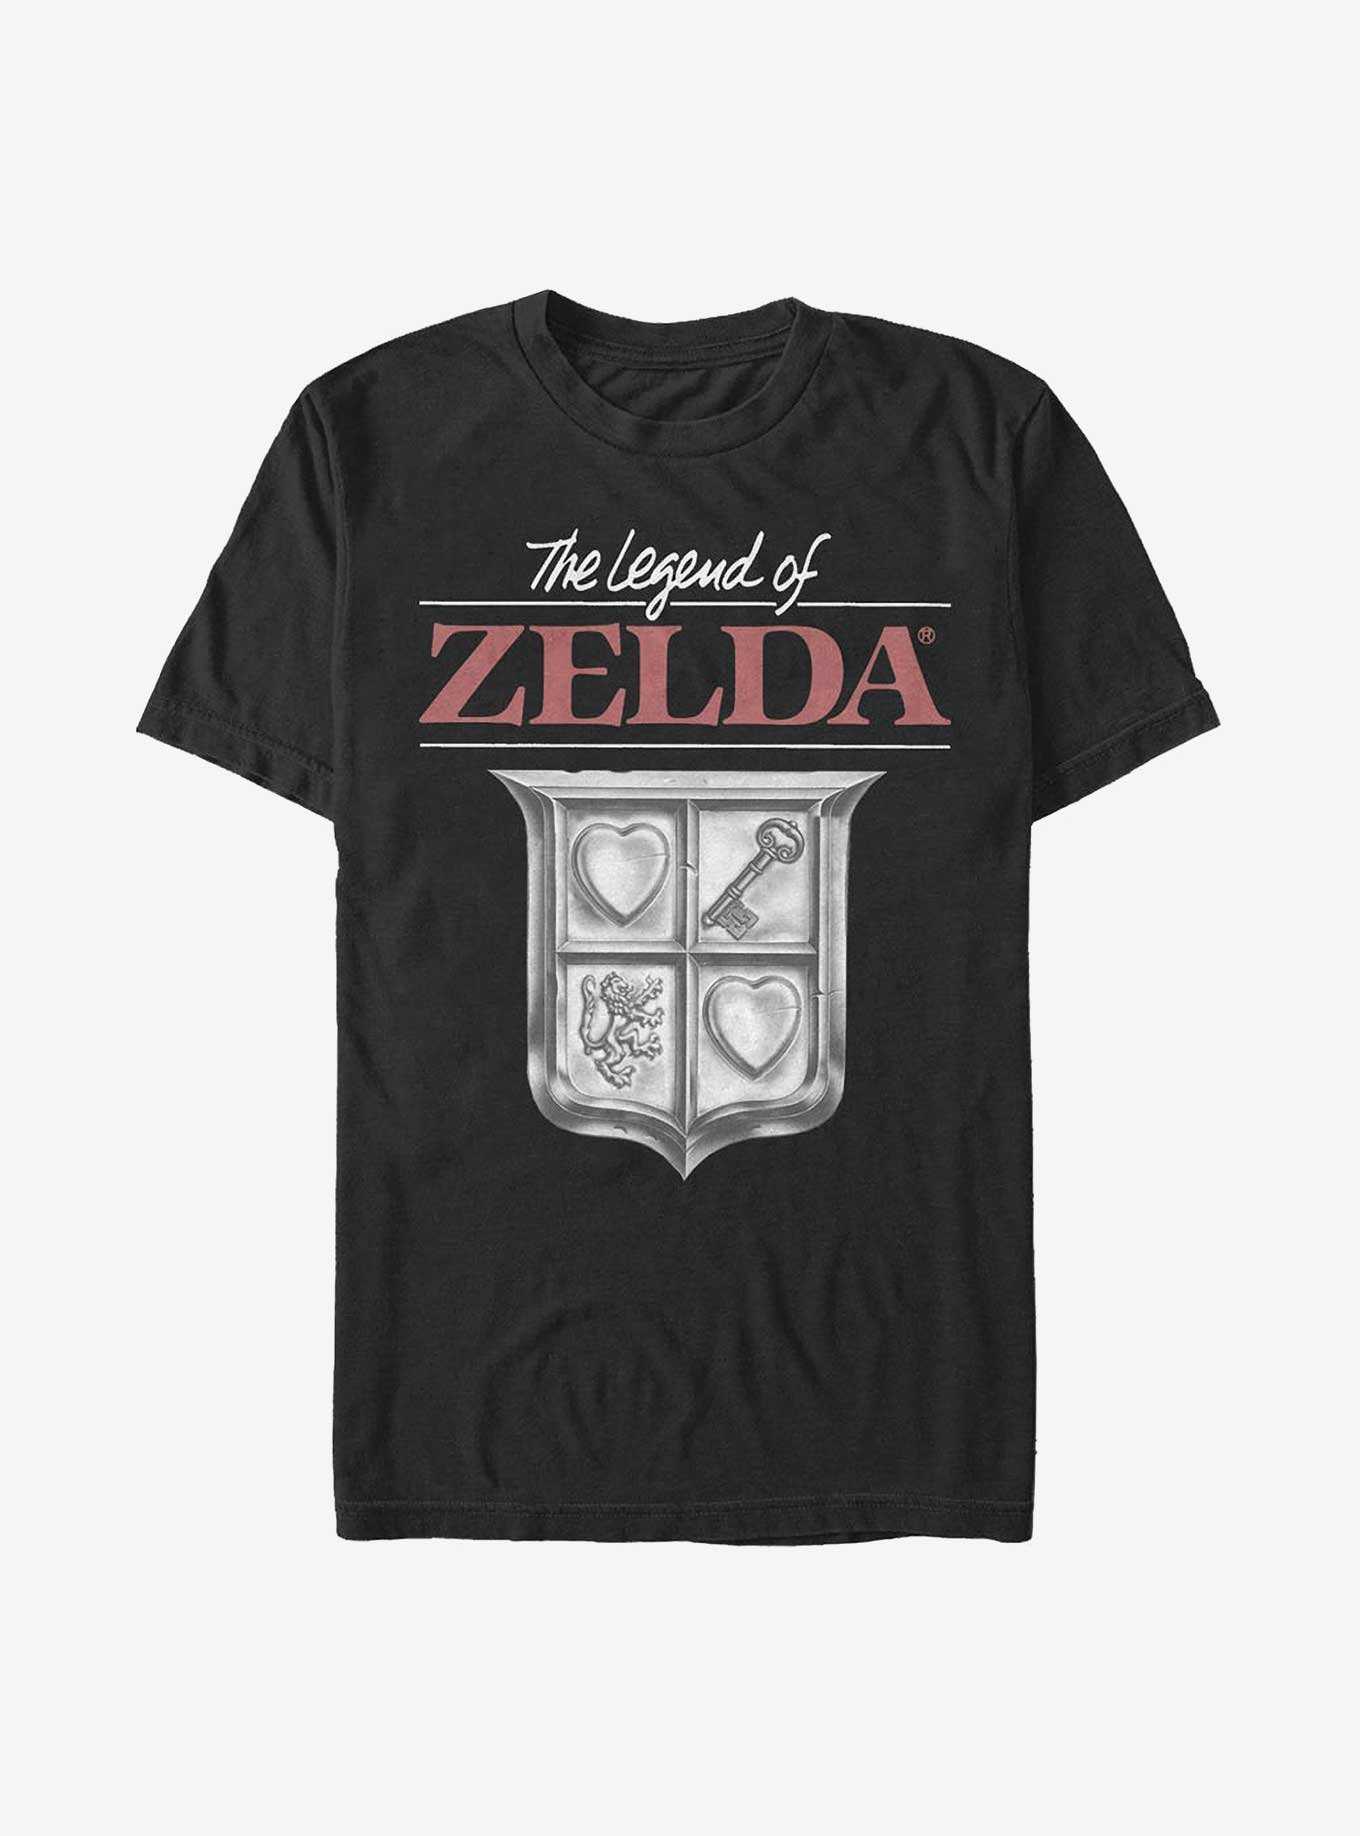 Nintendo Zelda Classic Shield T-Shirt, , hi-res